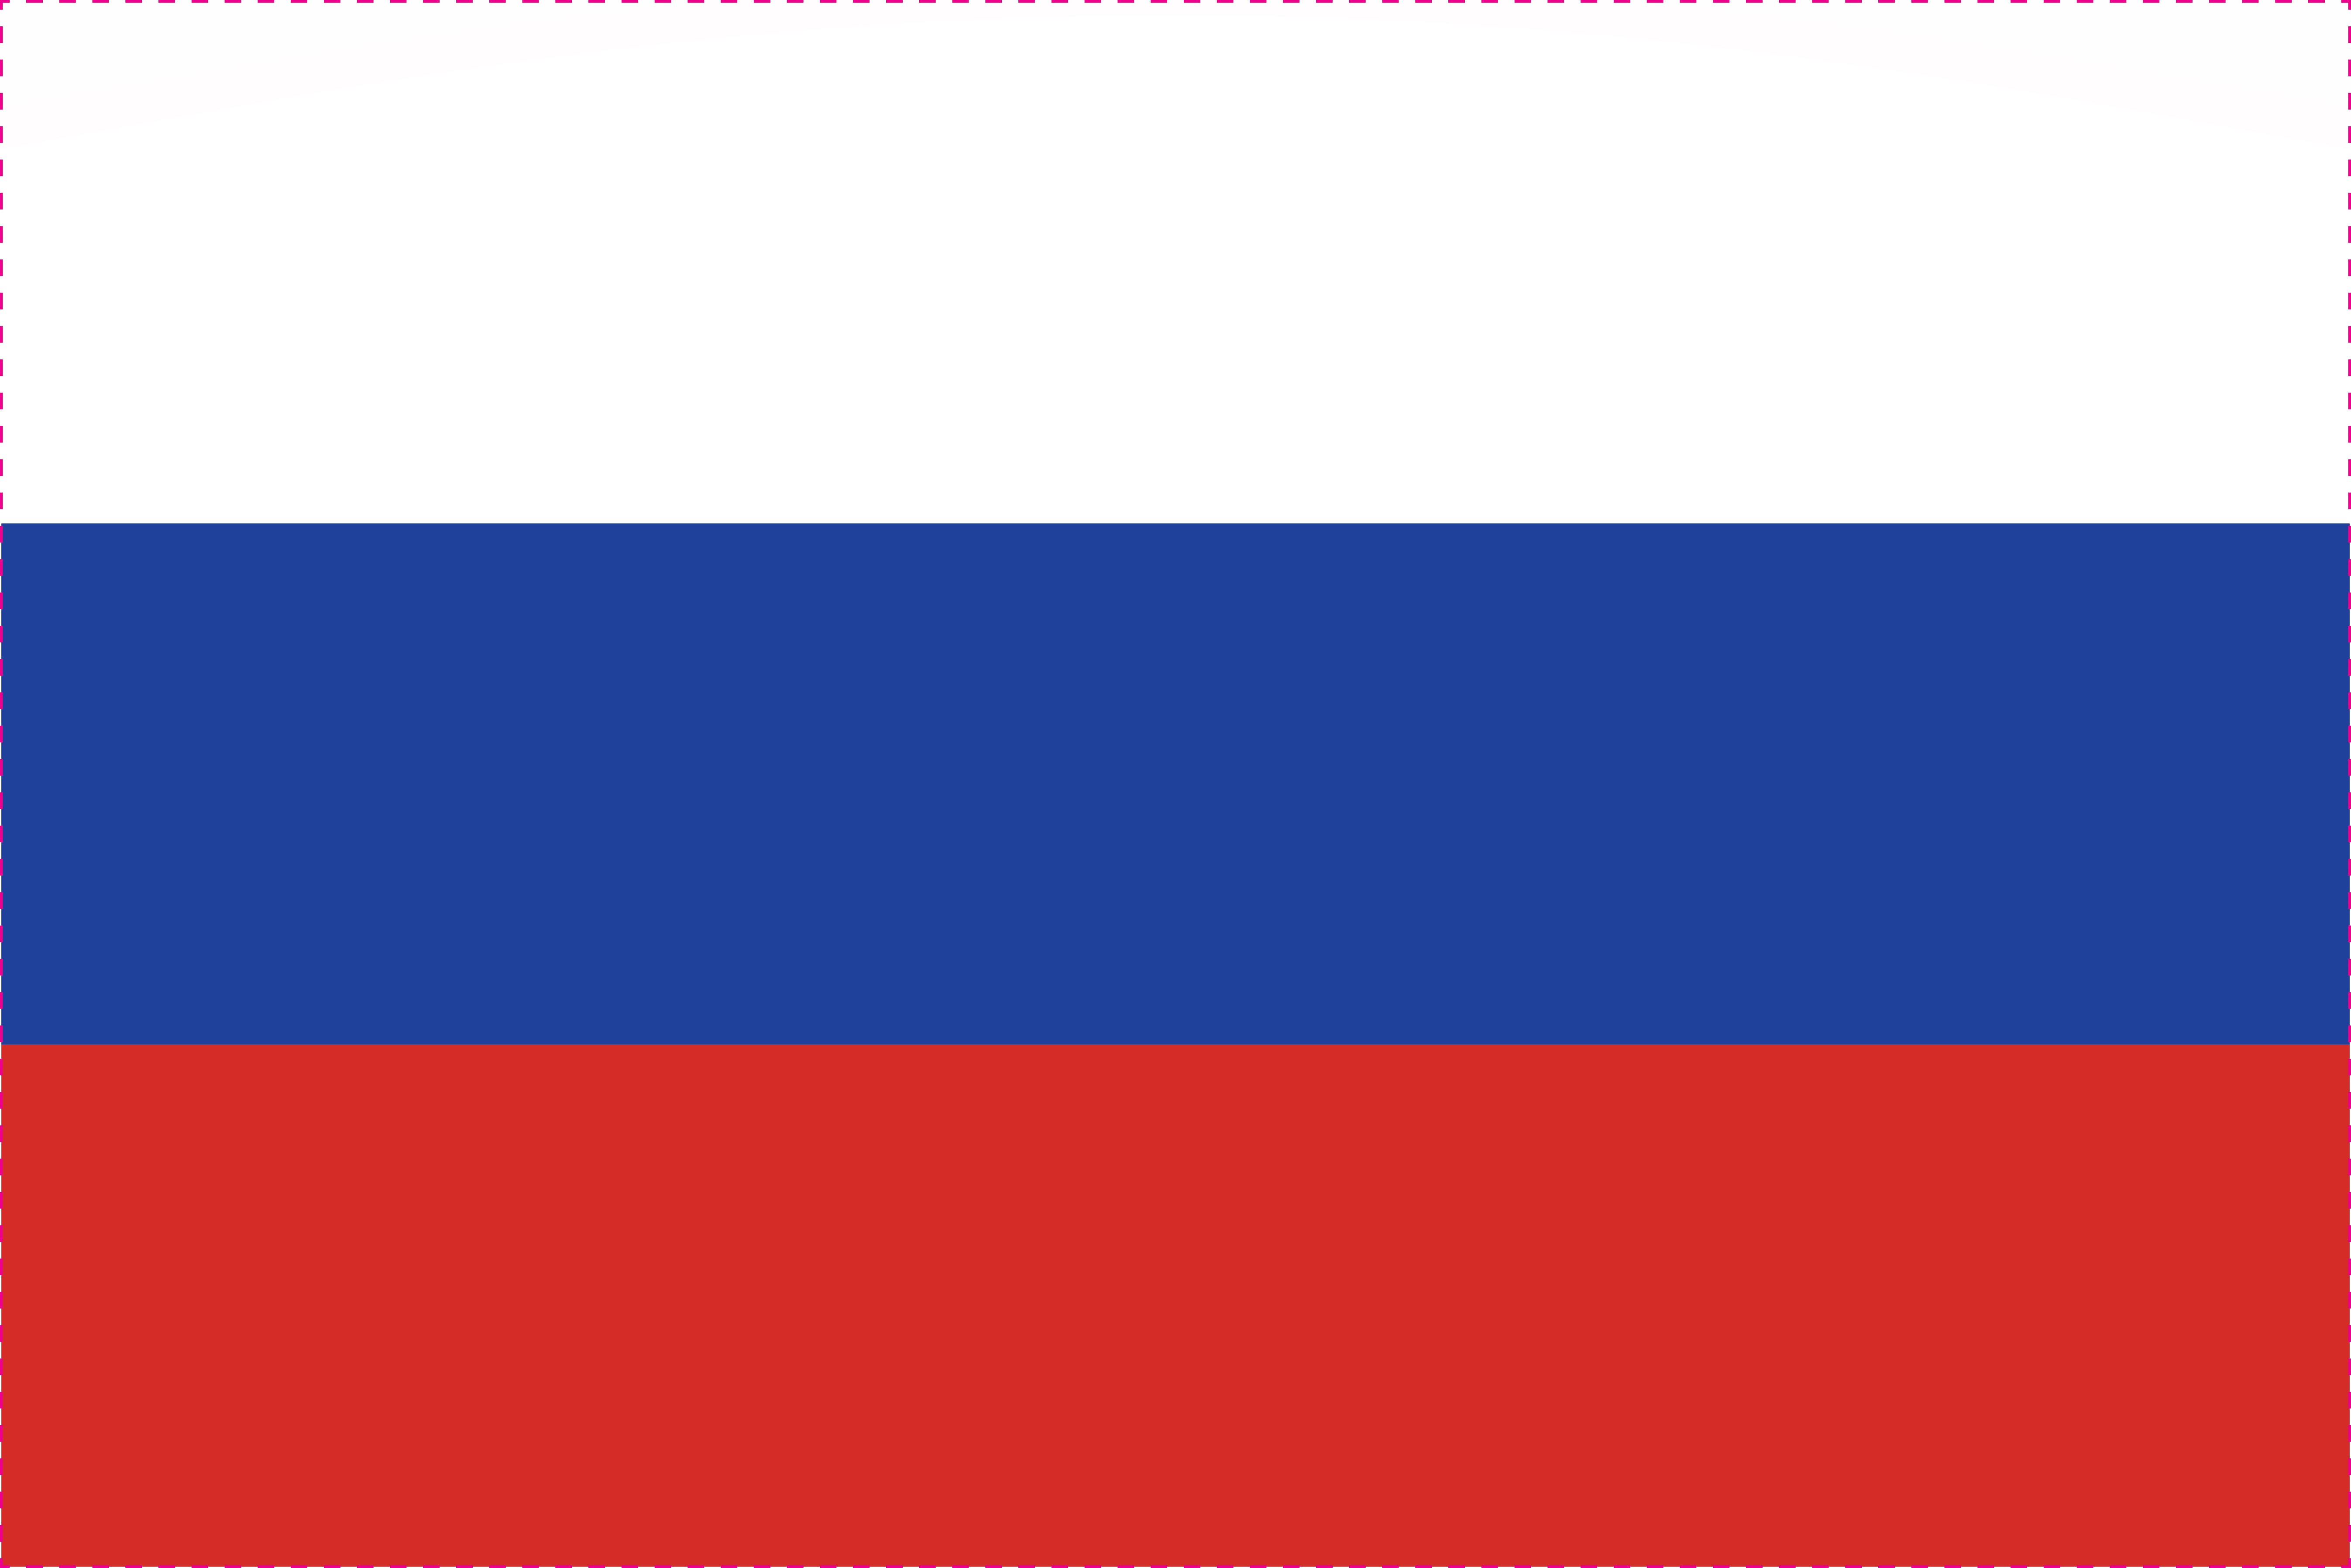 1x Russland Aufkleber 15cm Flagge breit Sticker Autoaufkleber selbstklebend